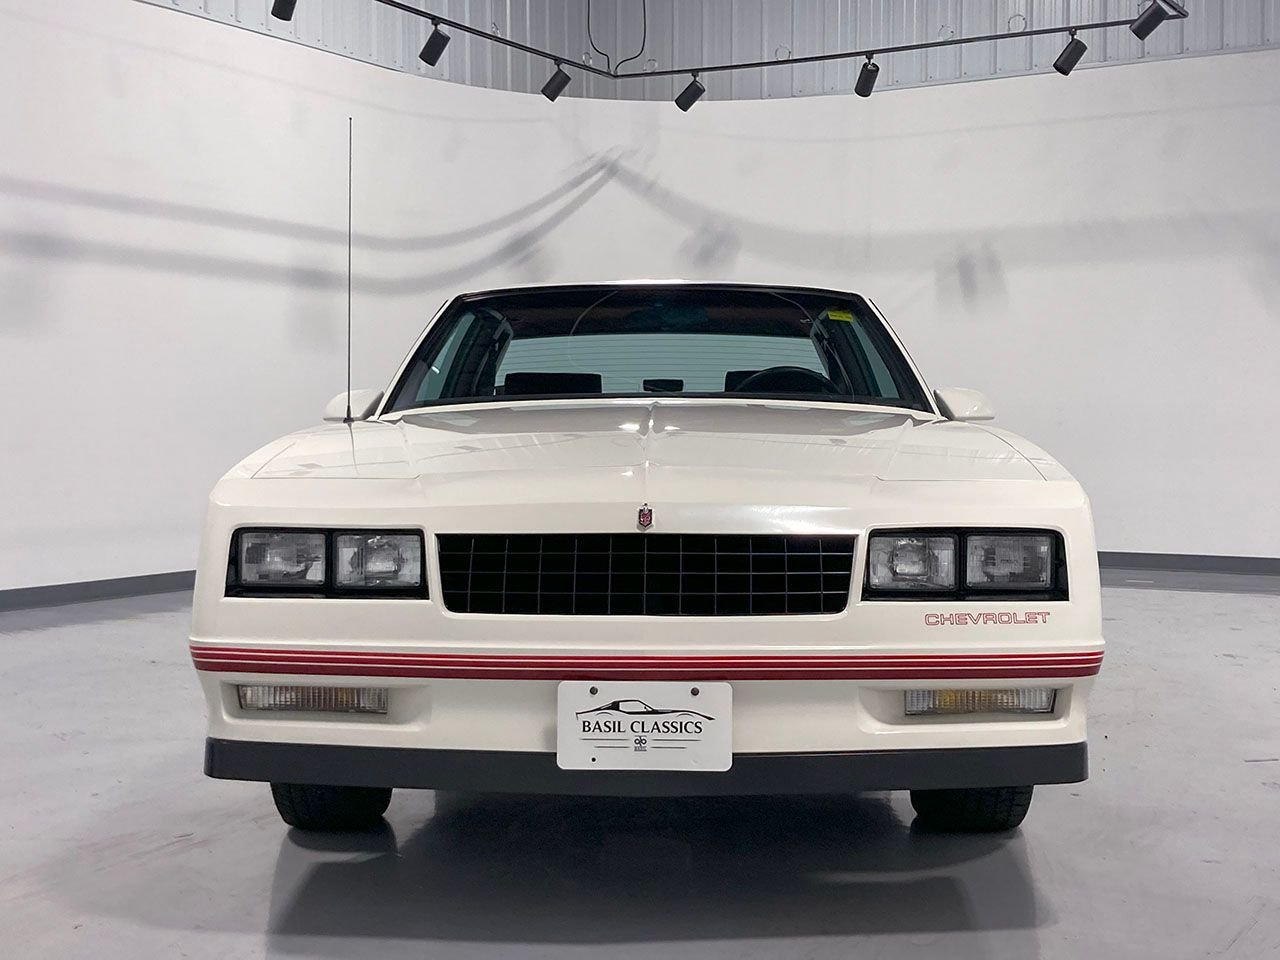 For Sale 1987 Chevrolet Monte Carlo